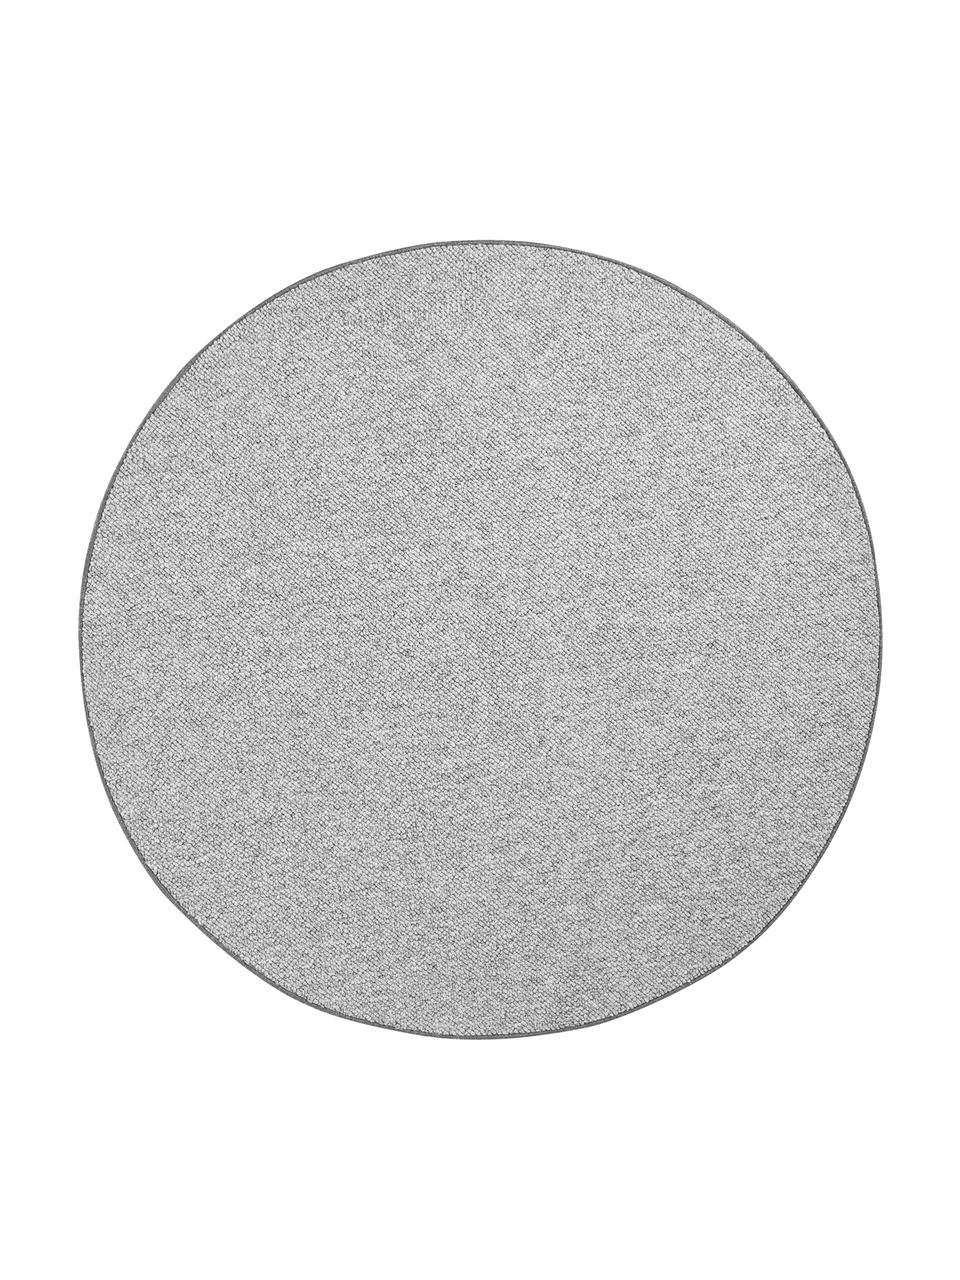 Runder Teppich Lyon mit Schlingen-Flor, Flor: 100% Polypropylen Rücken, Grau, melangiert, Ø 200 cm (Grösse L)